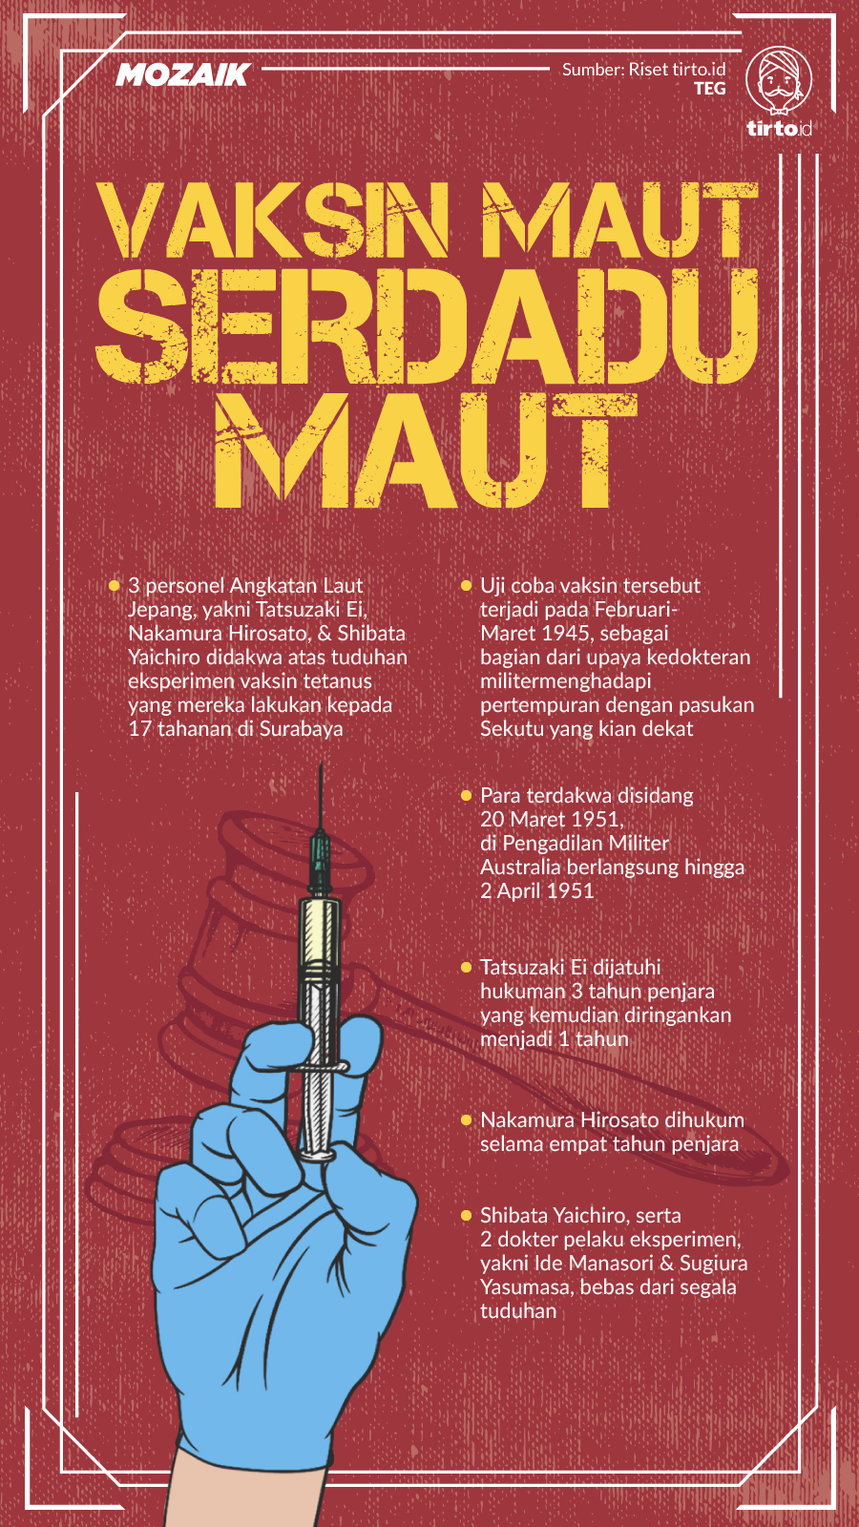 Infografik Mozaik Vaksin Maut Serdadu Jepang